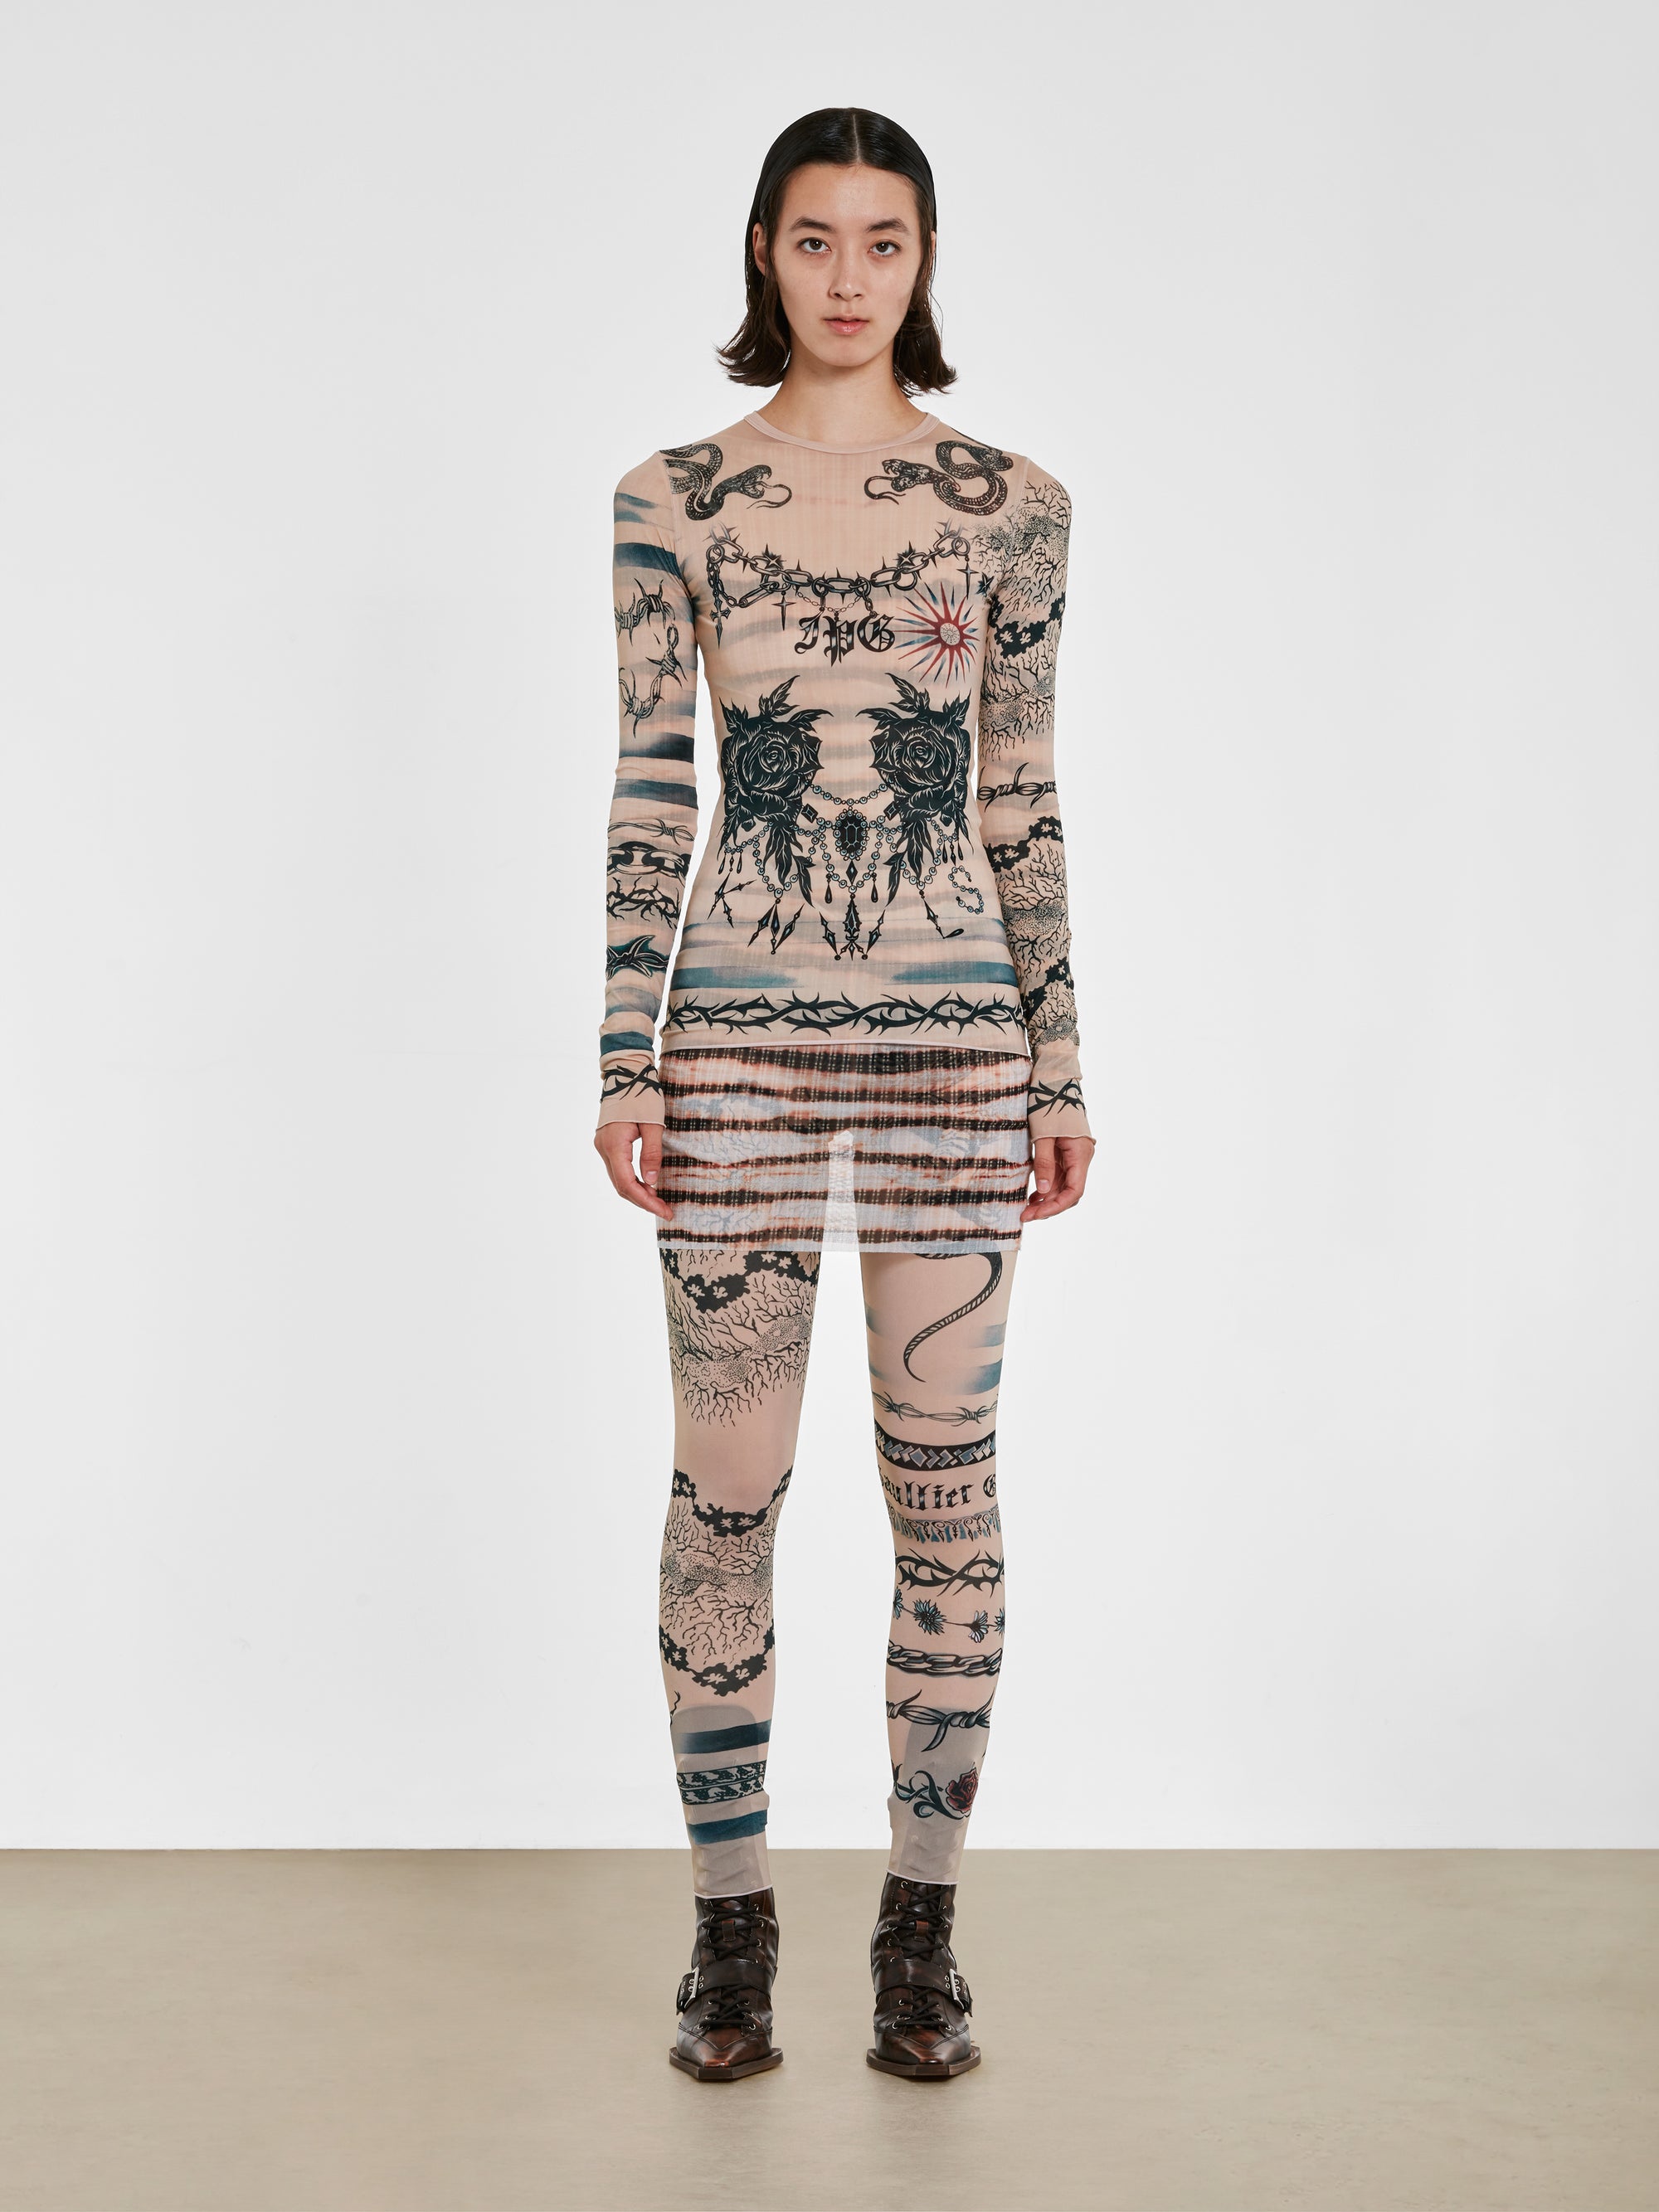 Jean Paul Gaultier - KNWLS Women’s Trompe L’Oeil Tattoo Long Sleeve Top - (Nude/Grey/Black) view 5